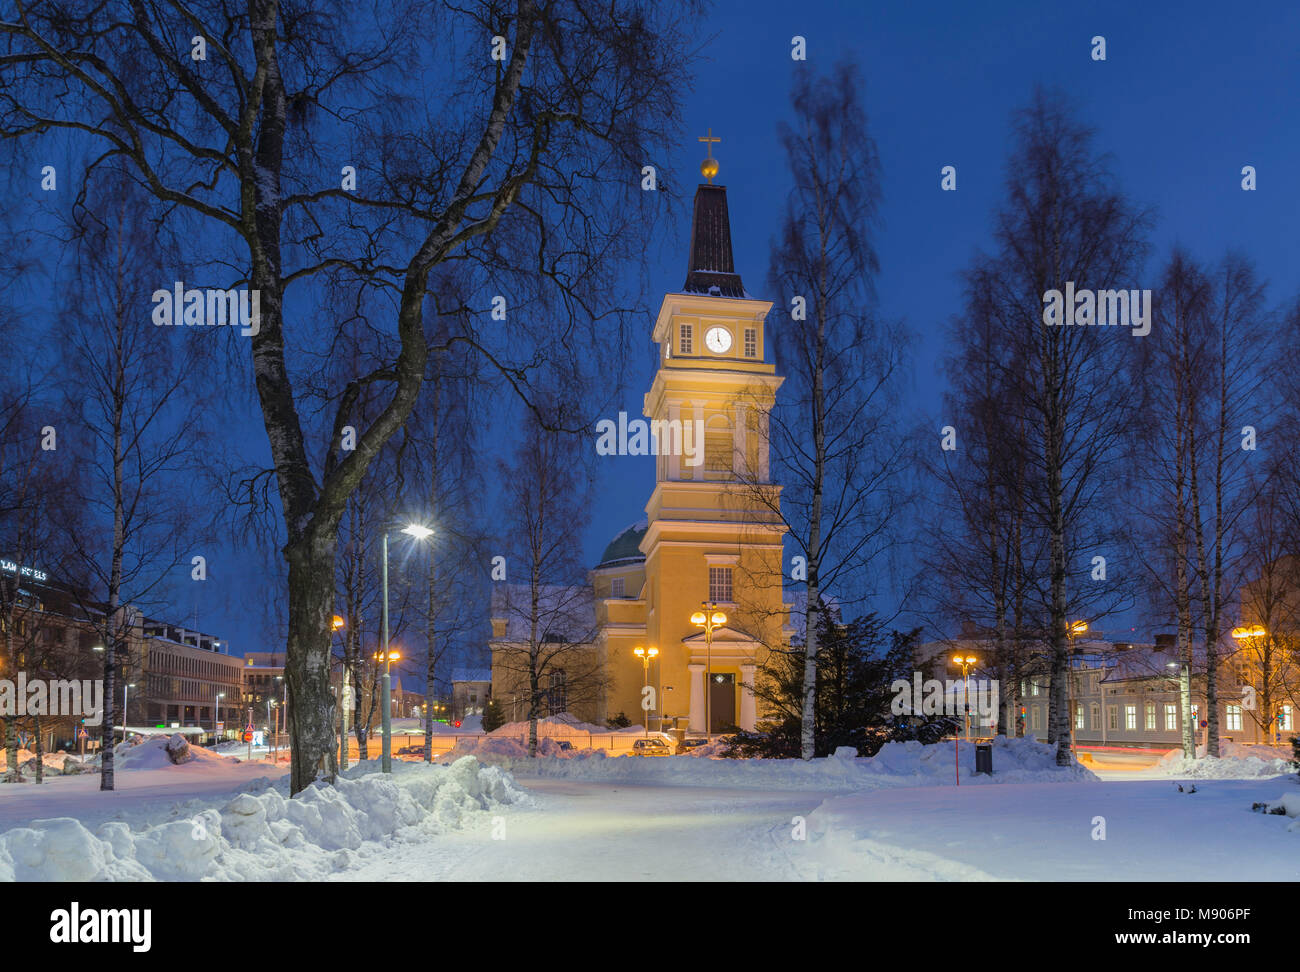 Oulun Banque de photographies et d'images à haute résolution - Alamy